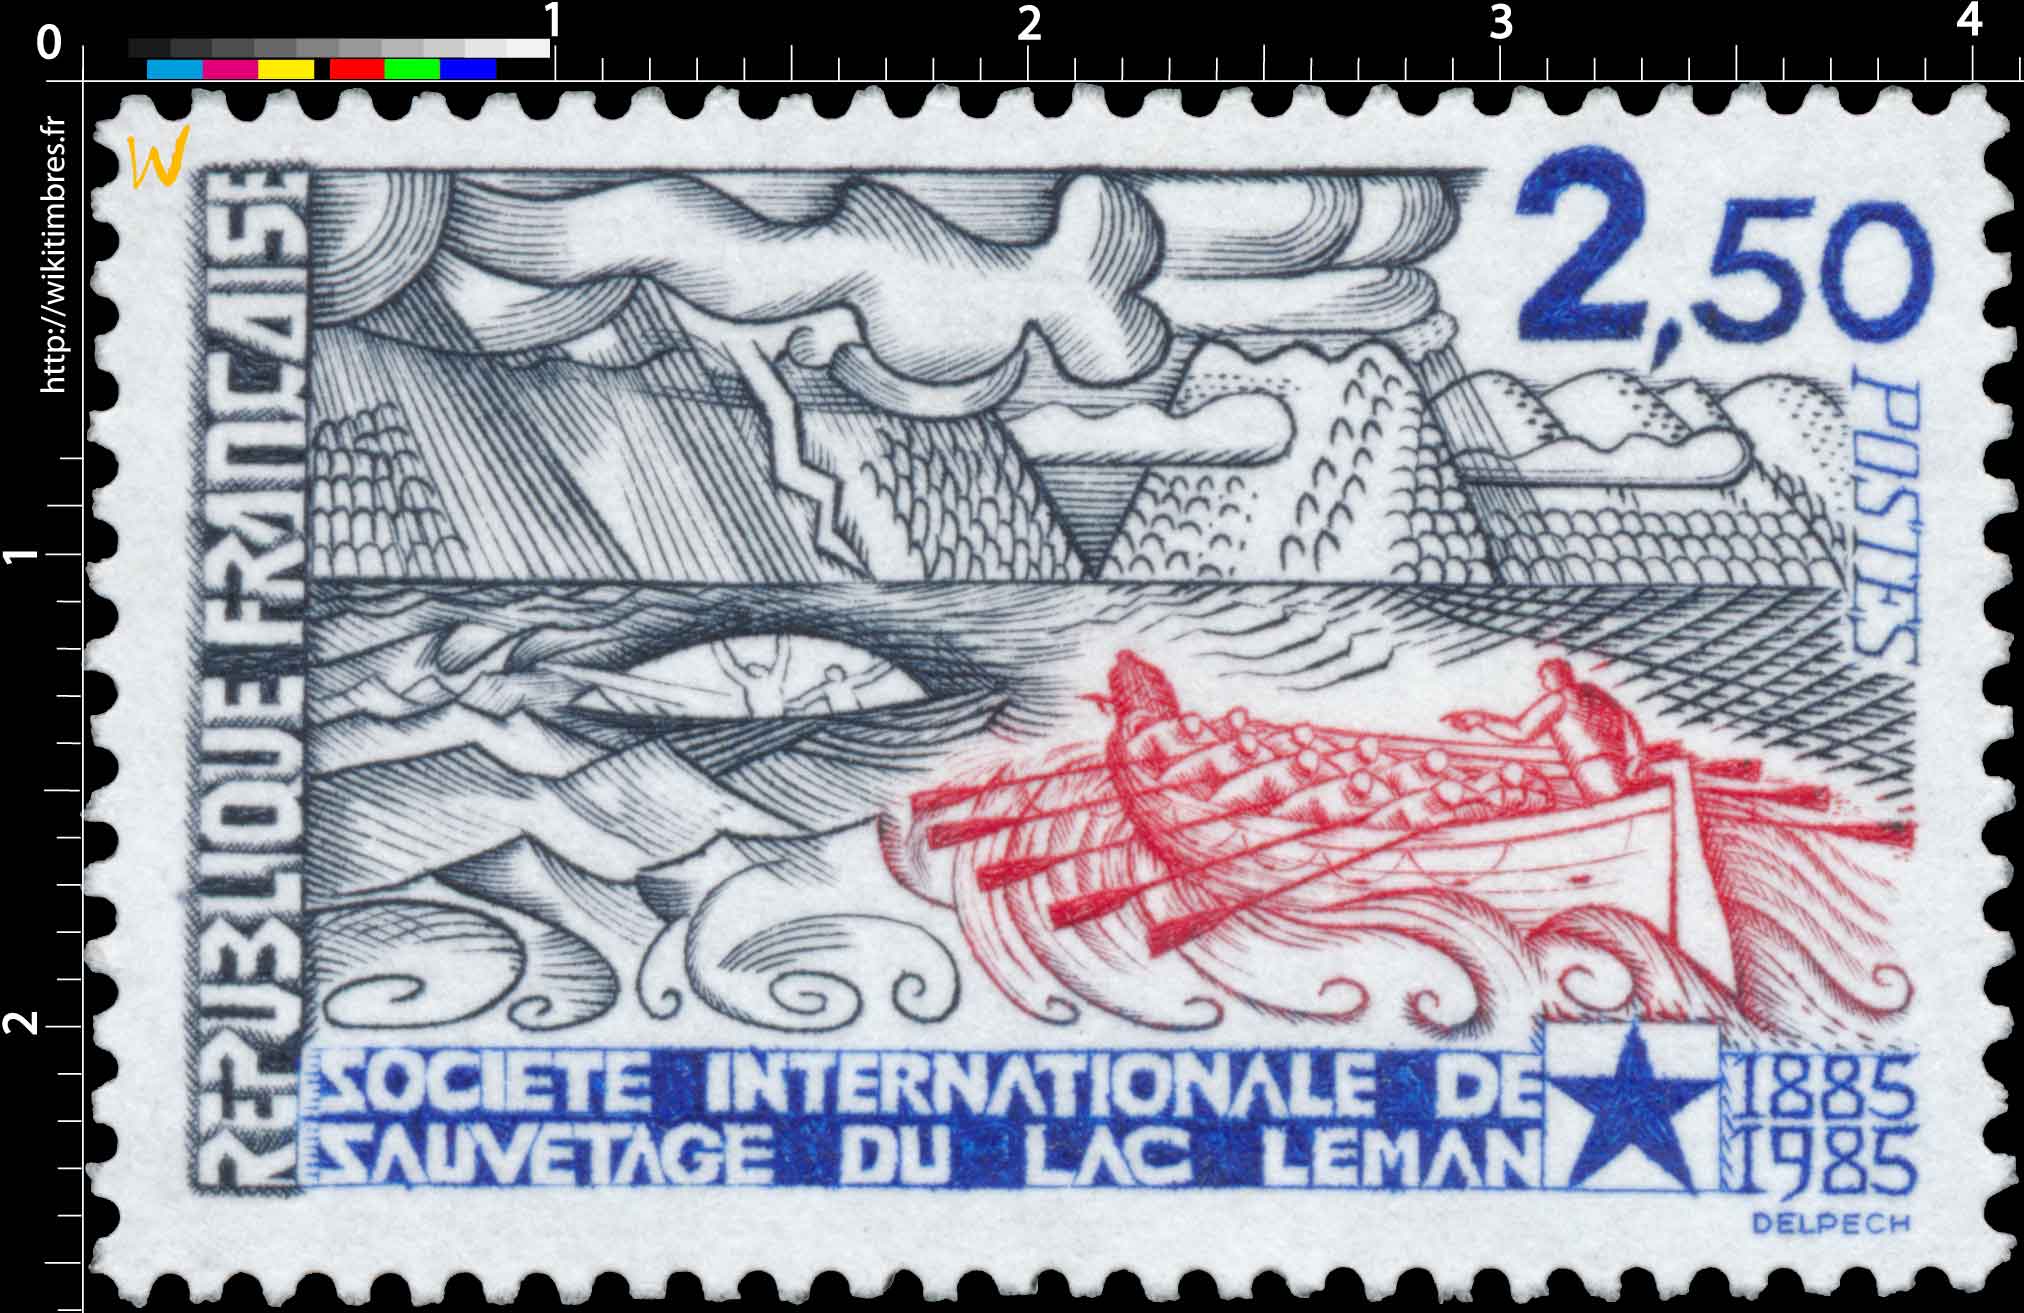 SOCIÉTÉ INTERNATIONALE DE SAUVETAGE DU LAC LÉMAN 1885-1985